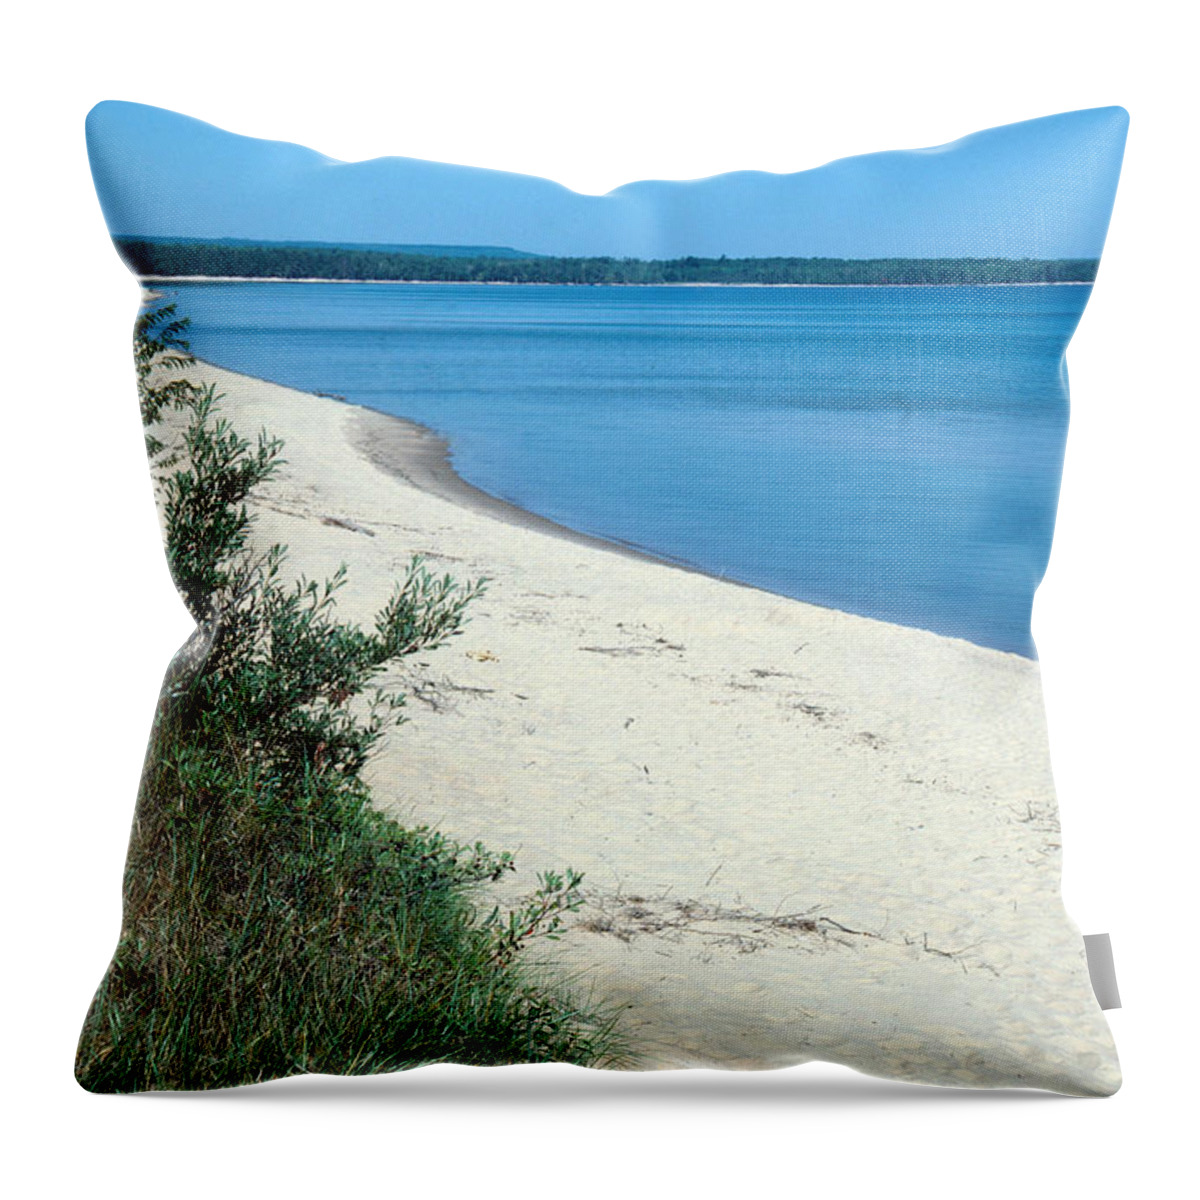 Beach Throw Pillow featuring the photograph Lake Superior Beach by John W. Bova